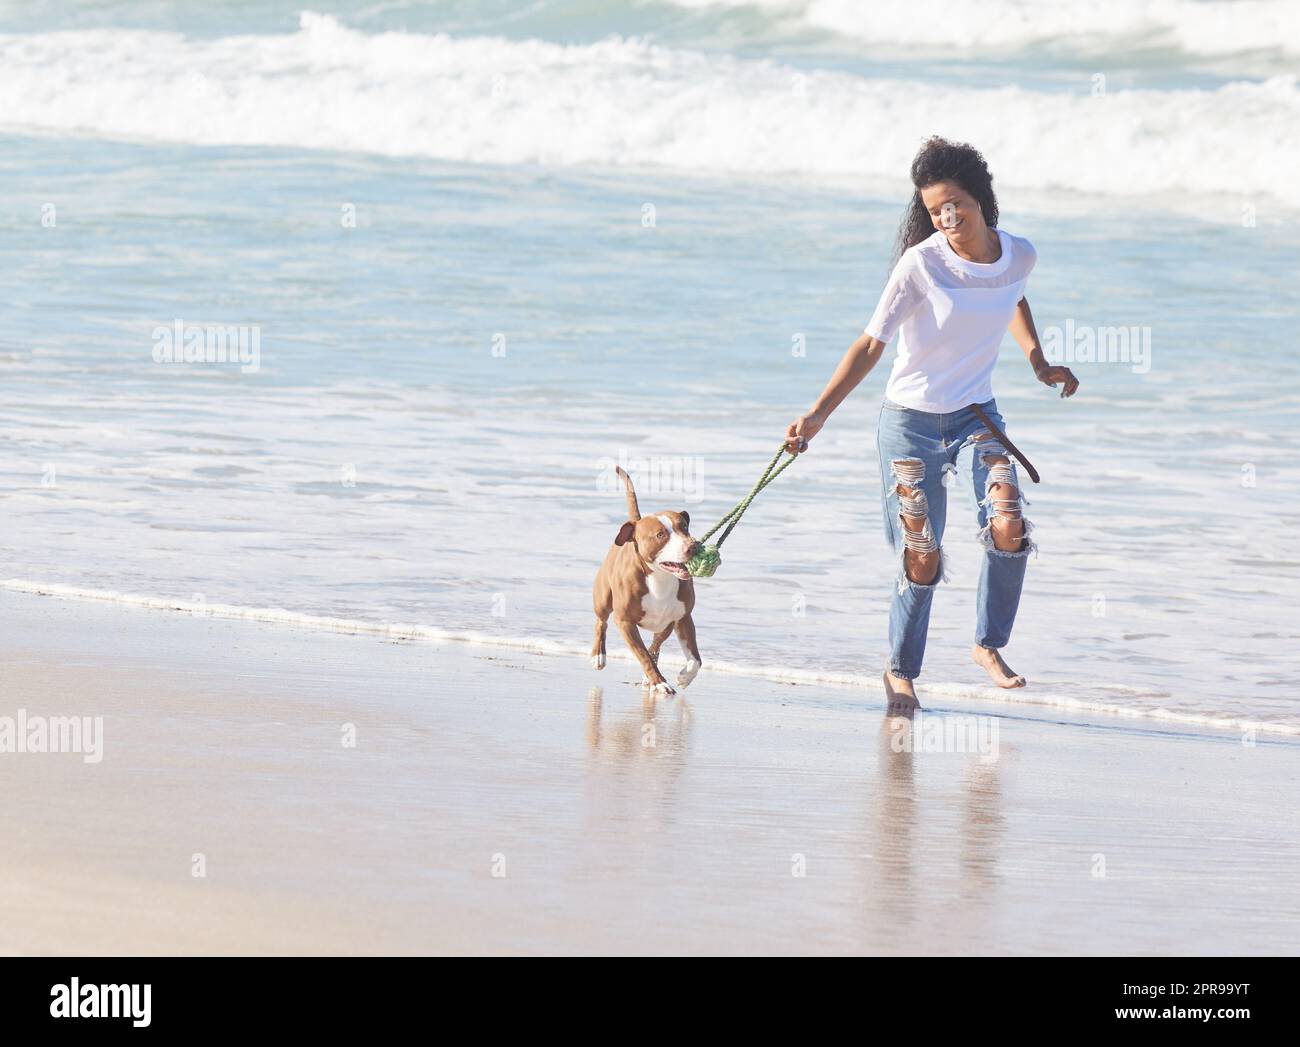 Die besten Dinge im Leben sind pelzigen. Eine Frau spielt mit ihrem Pitbull am Strand. Stockfoto